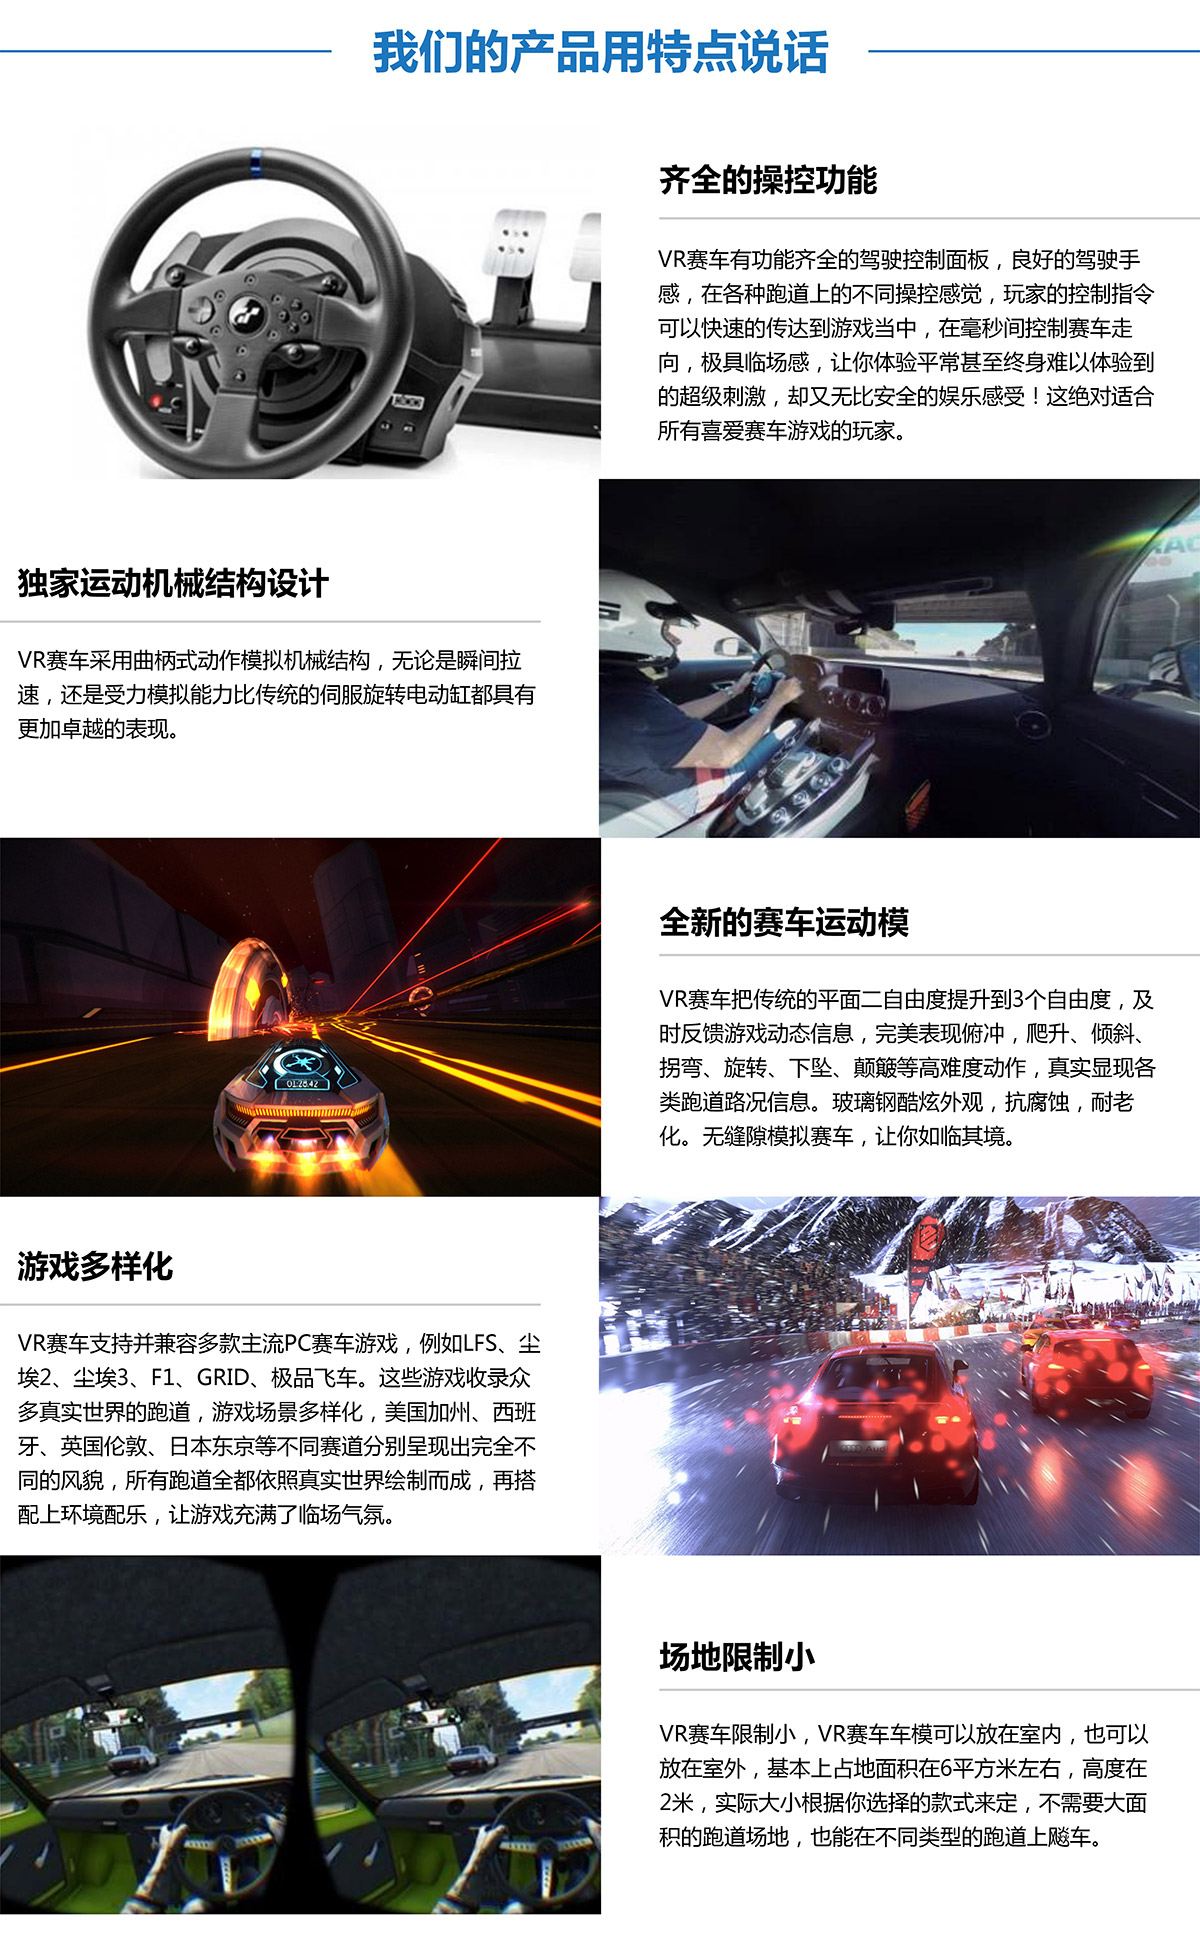 动感影院虚拟VR赛车产品用特点说话.jpg